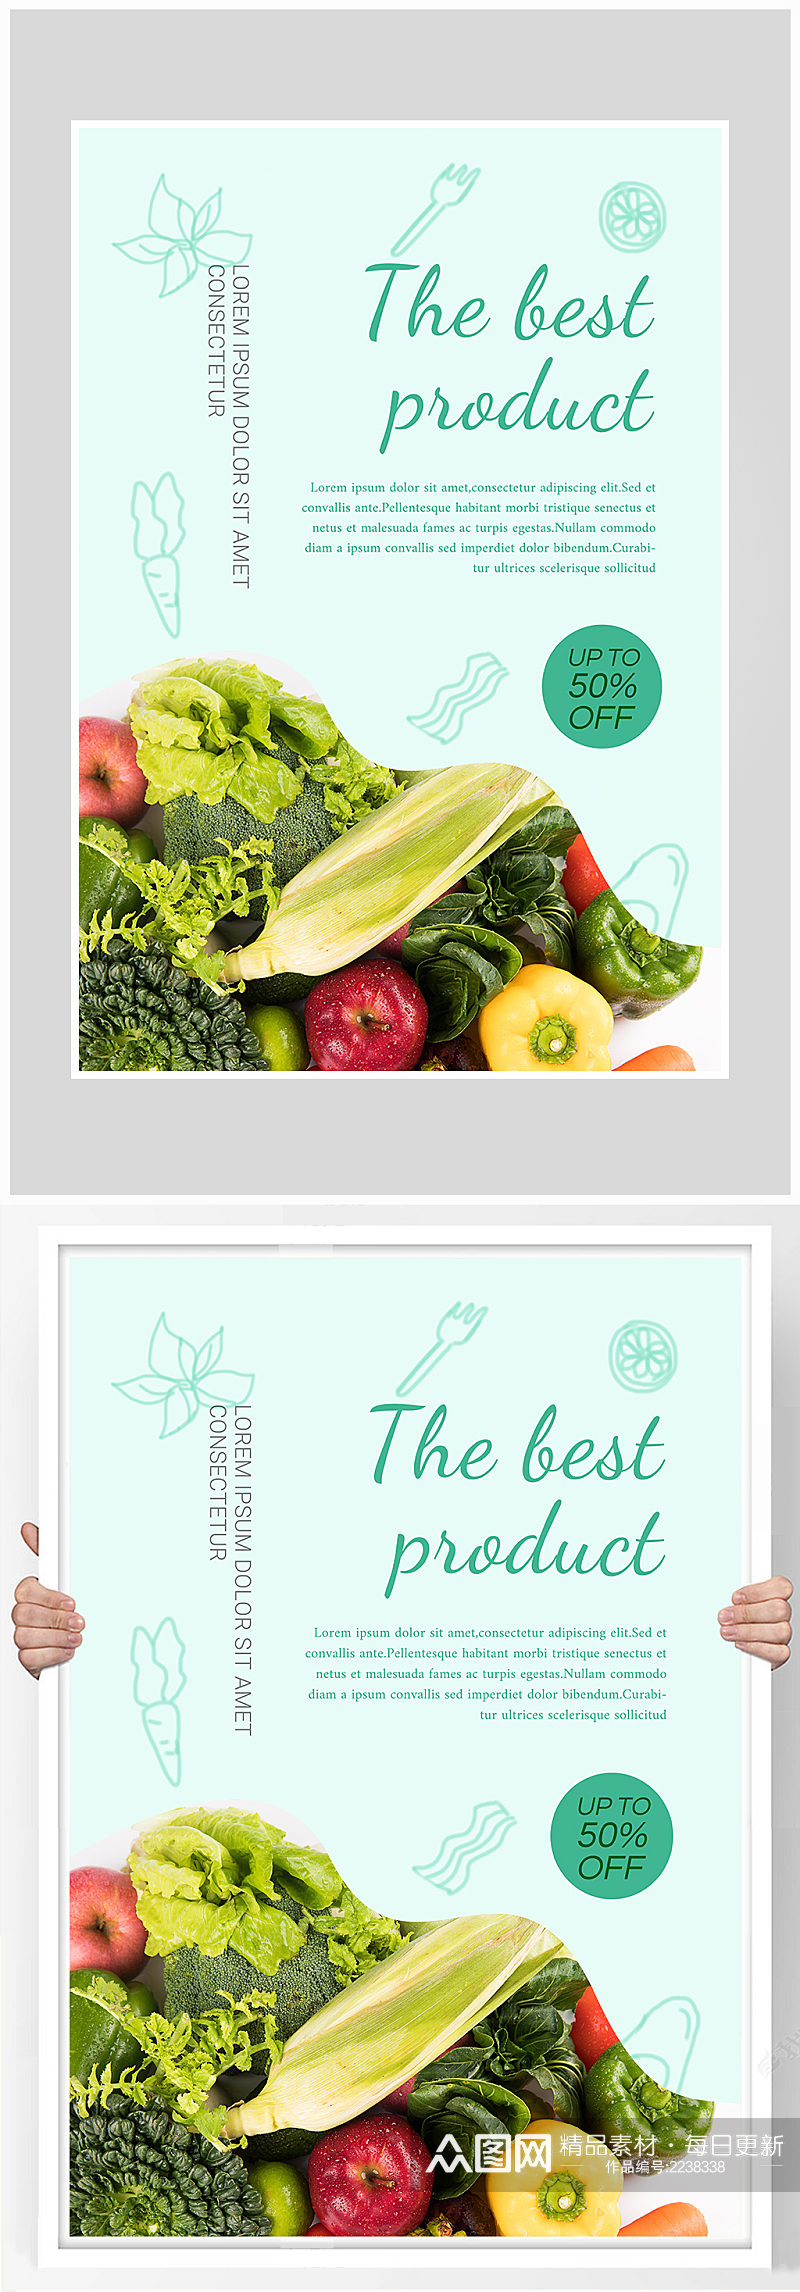 创意质感新鲜蔬菜沙拉海报设计素材